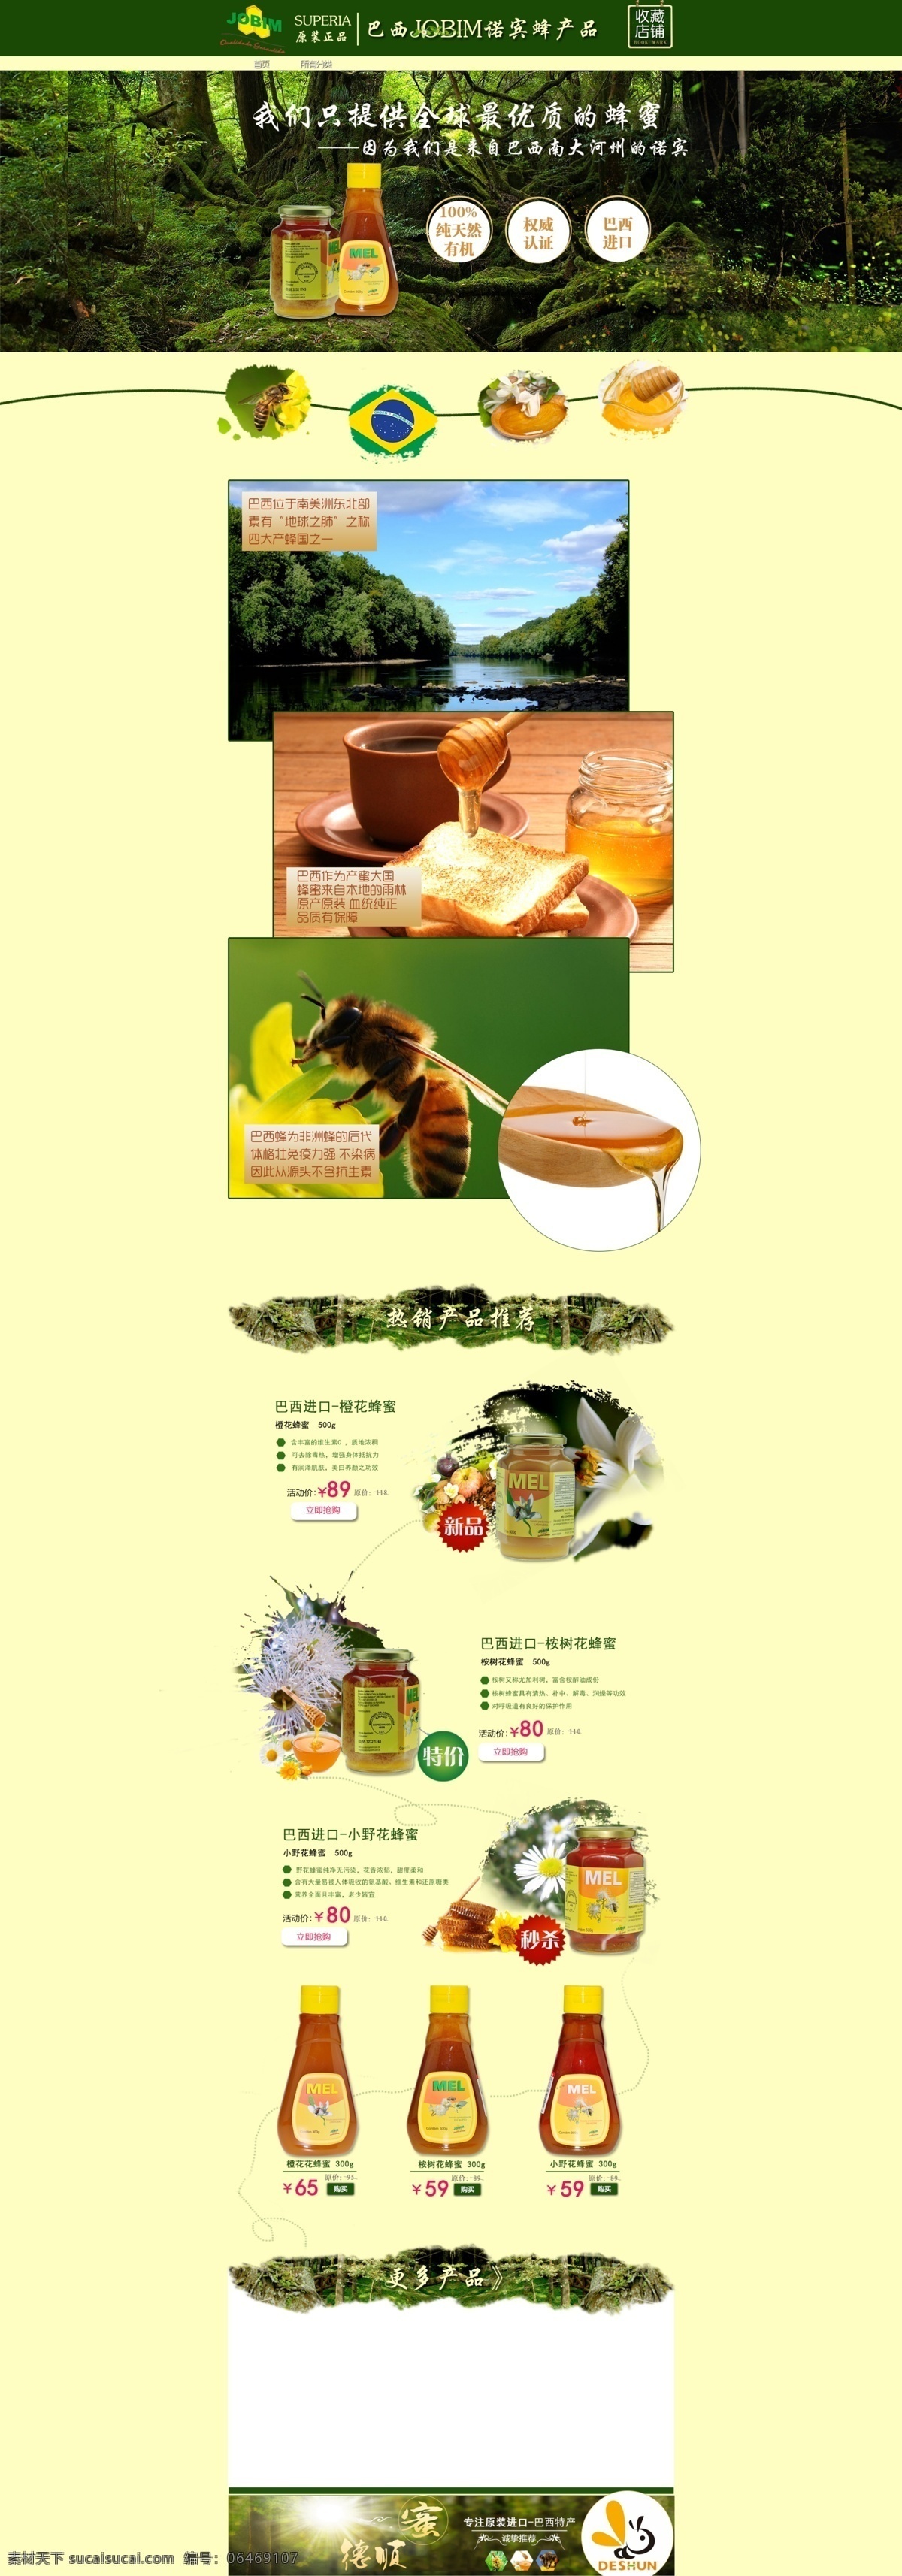 进口 蜂蜜 绿色 首页 淘宝 清新 蜂蜜首页 进口绿色 原创设计 原创淘宝设计